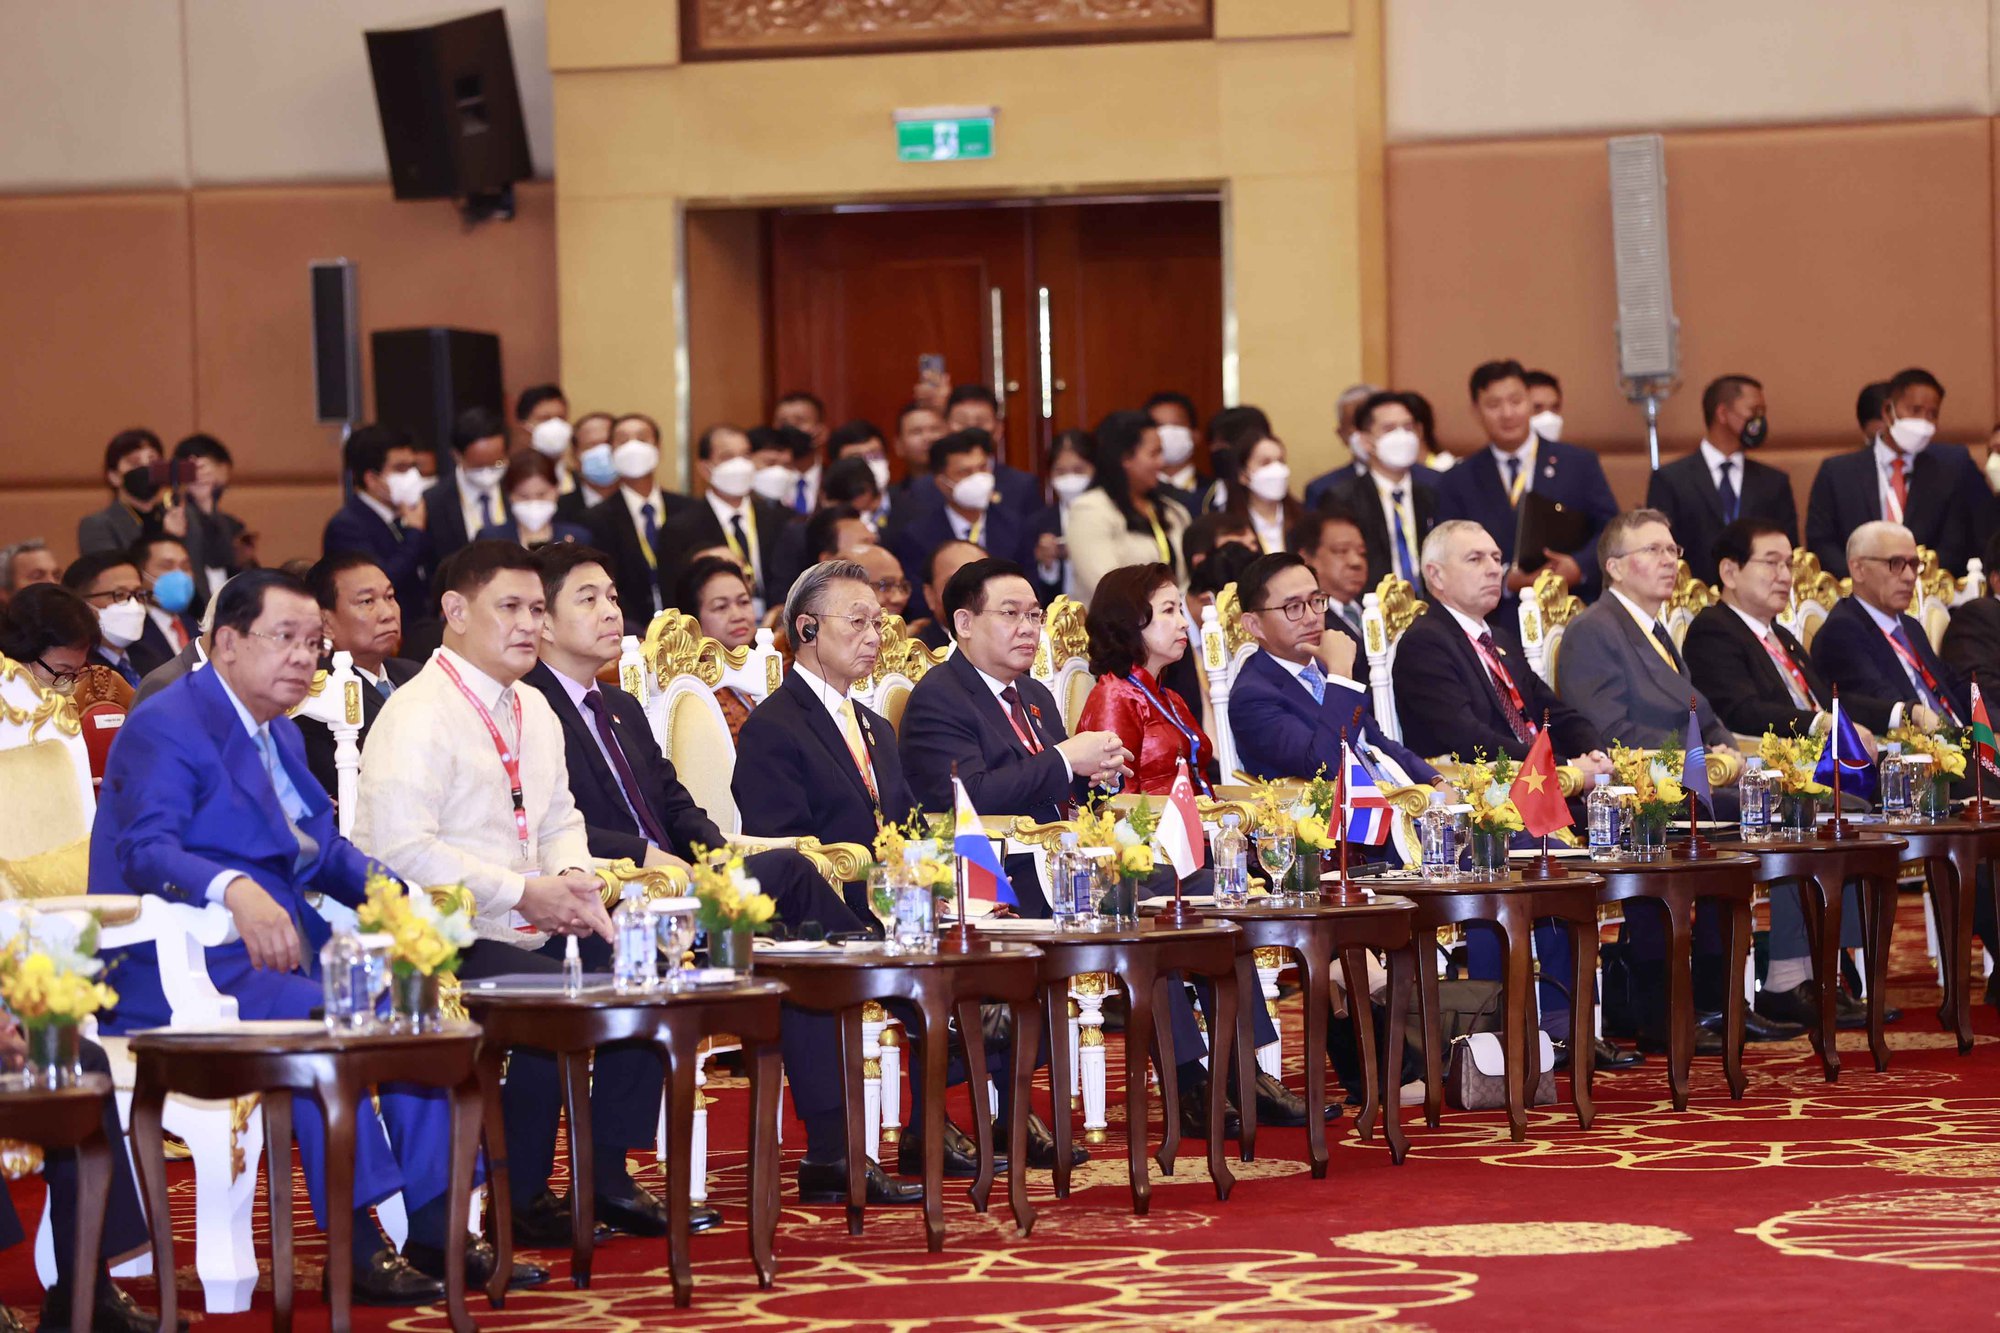 Khai mạc Đại hội đồng liên nghị viện các quốc gia Đông Nam Á lần thứ 43 - Ảnh 7.